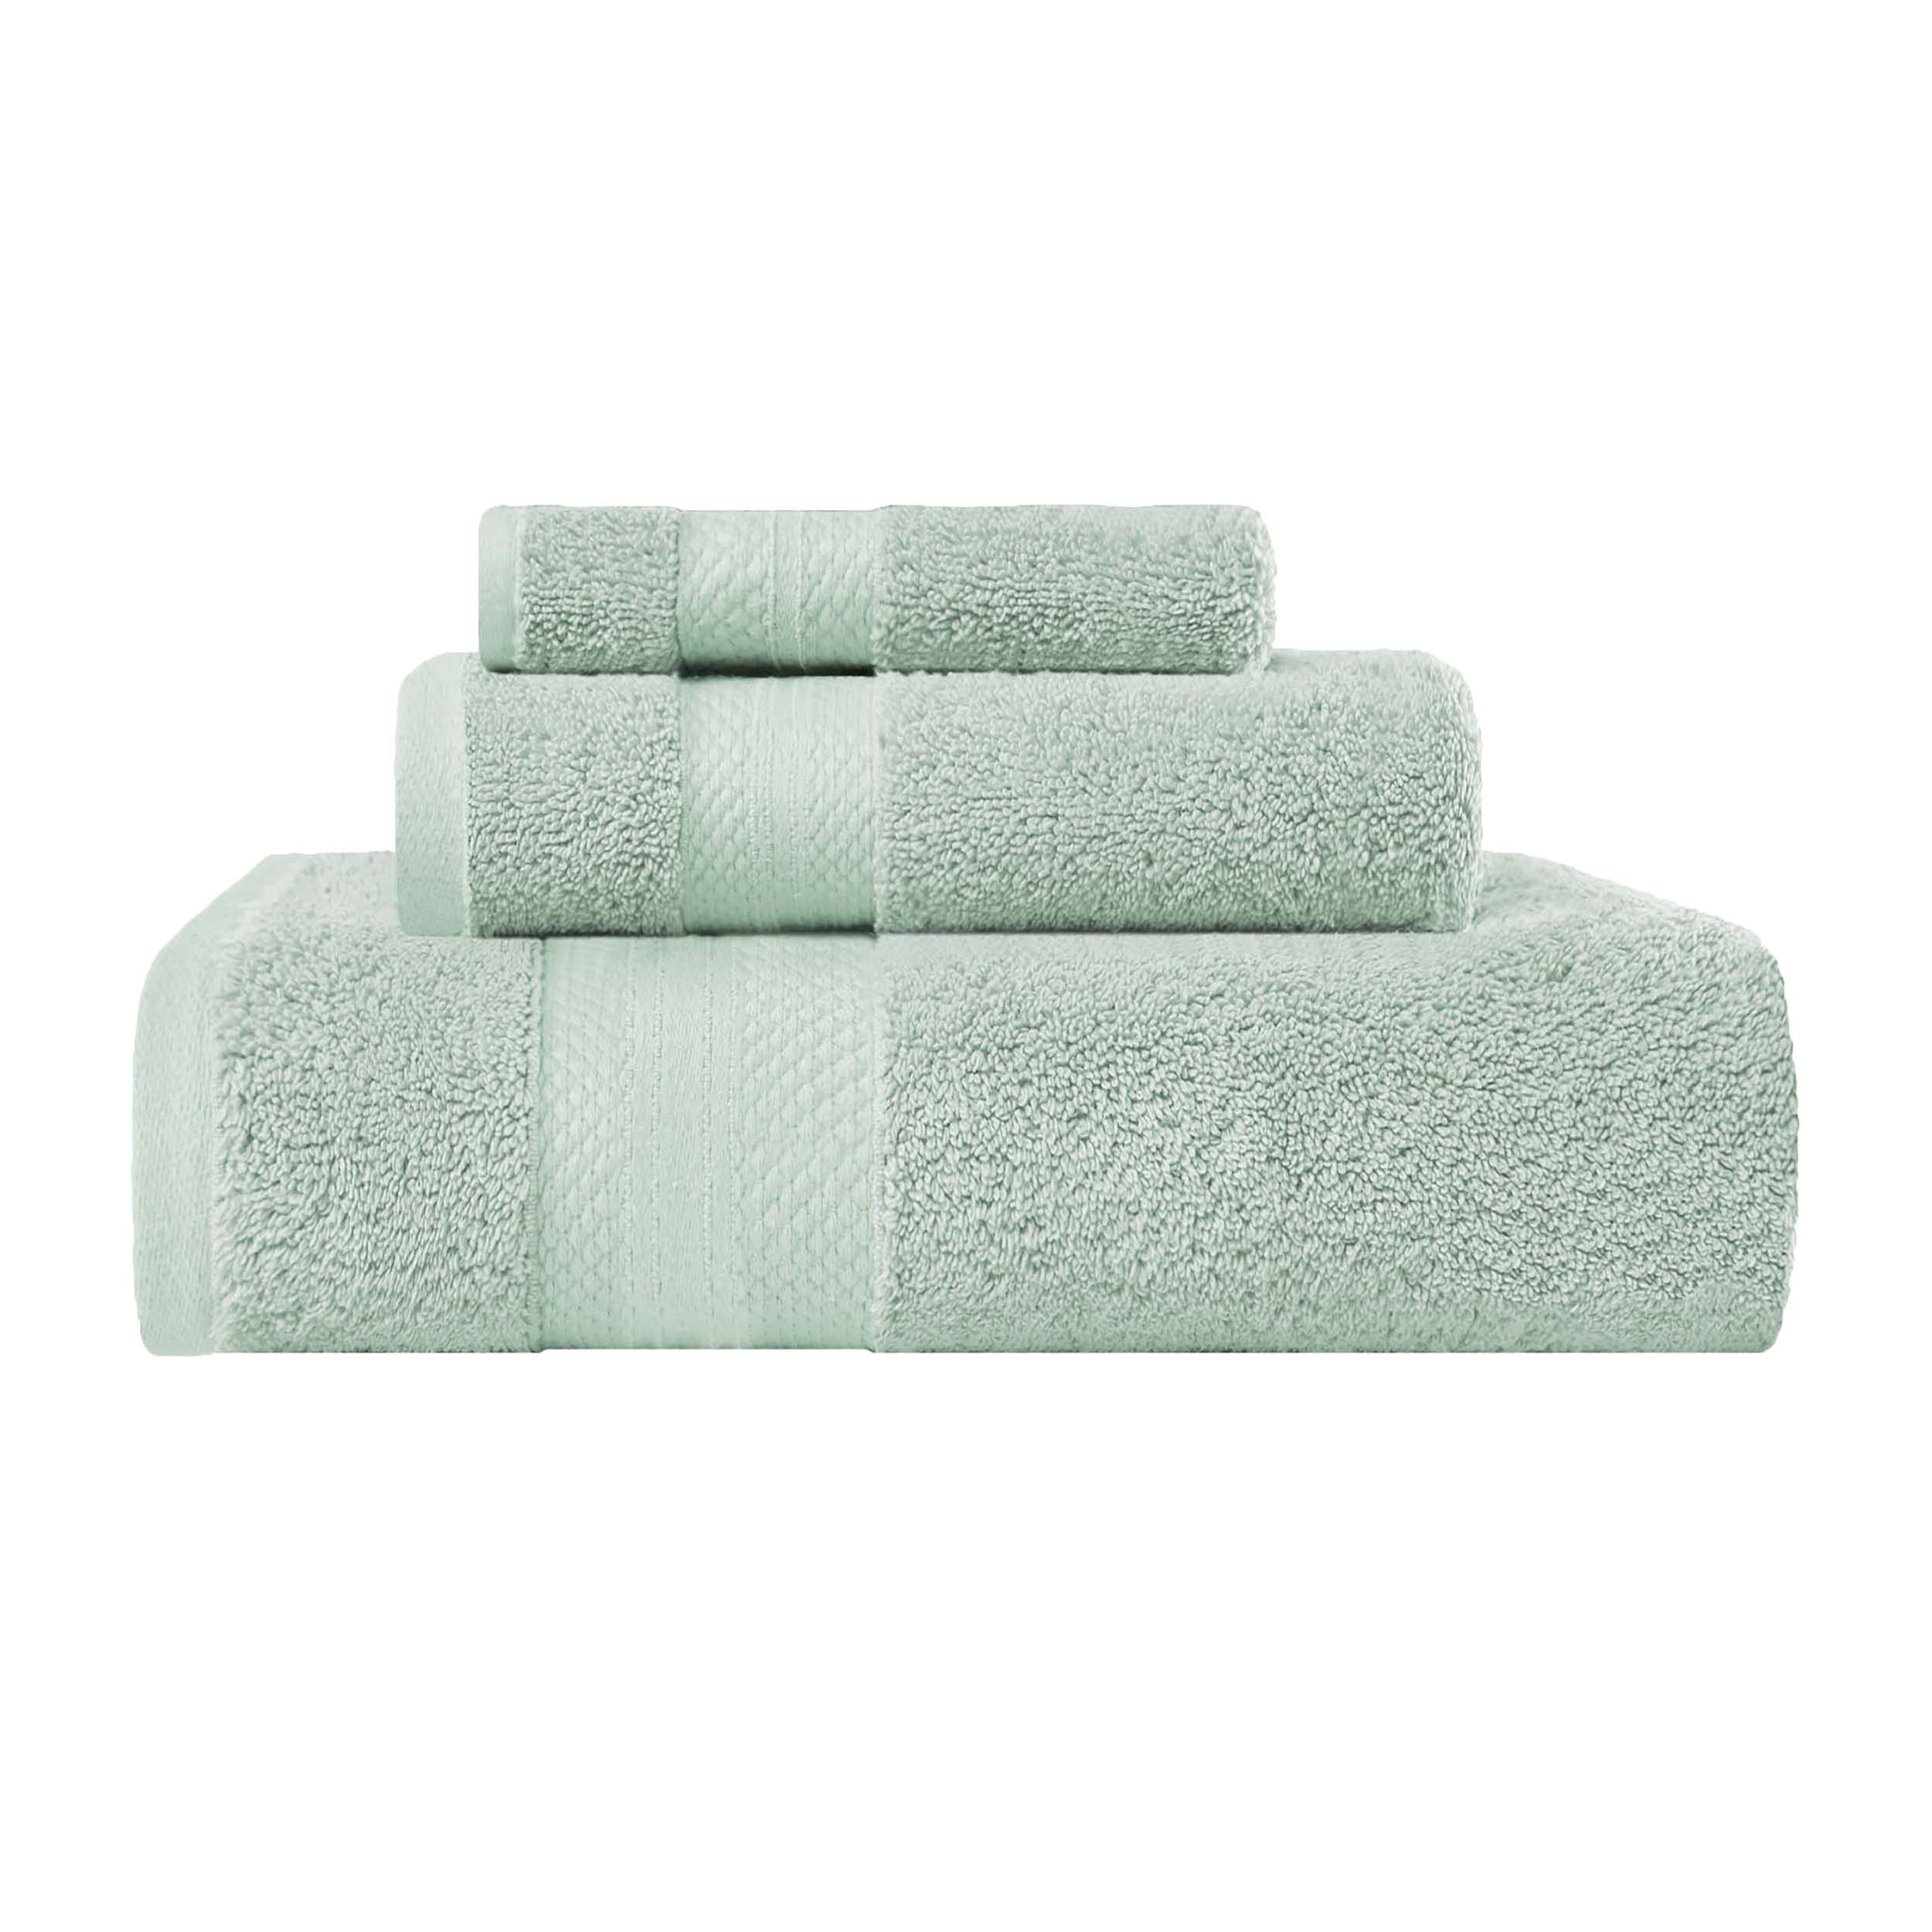 https://assets.wfcdn.com/im/90959809/compr-r85/2370/237012507/turpin-turkish-cotton-3-piece-solid-ultra-plush-heavyweight-towel-set.jpg